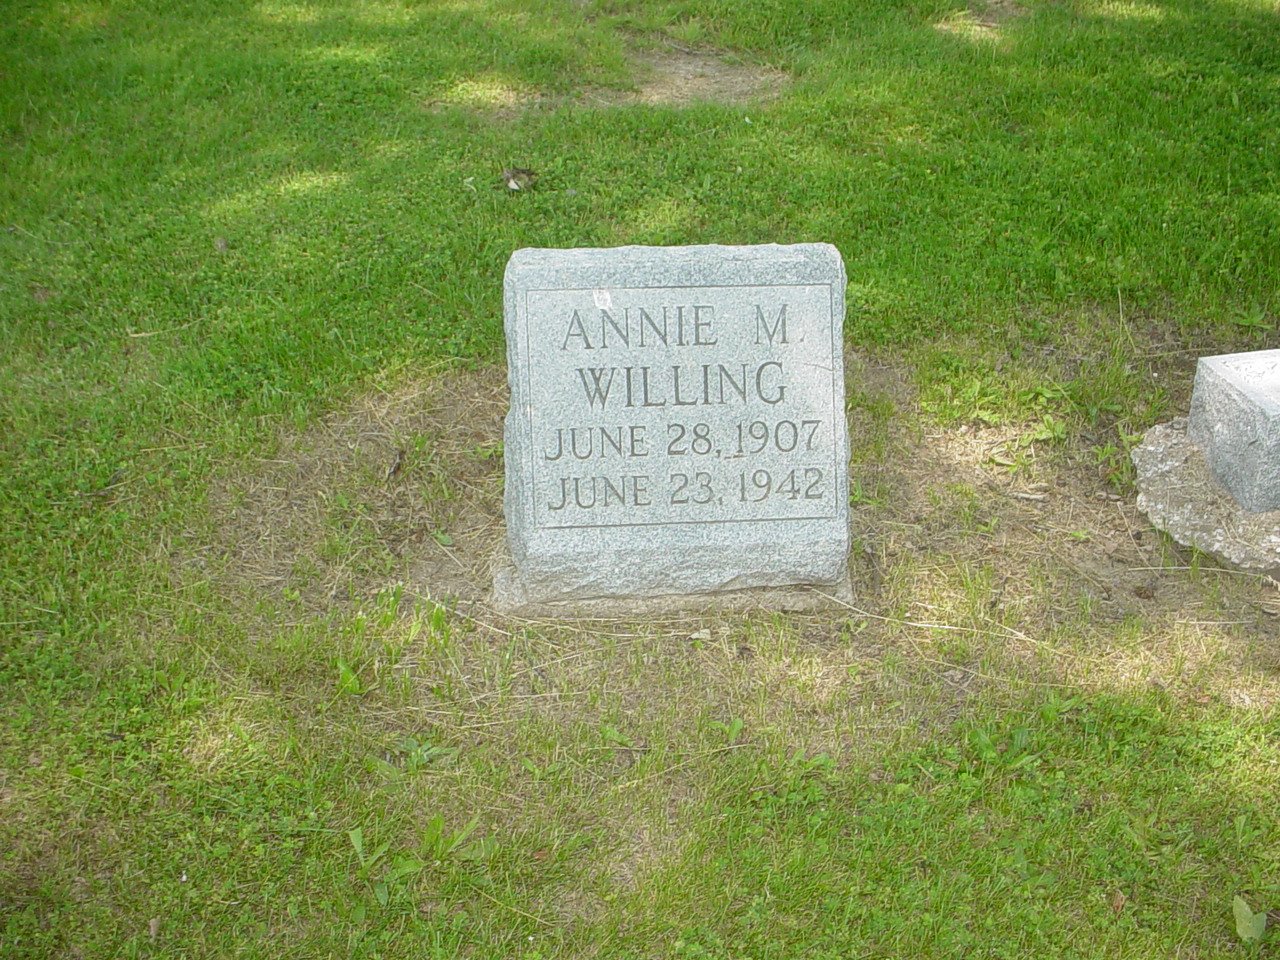  Annie Willing